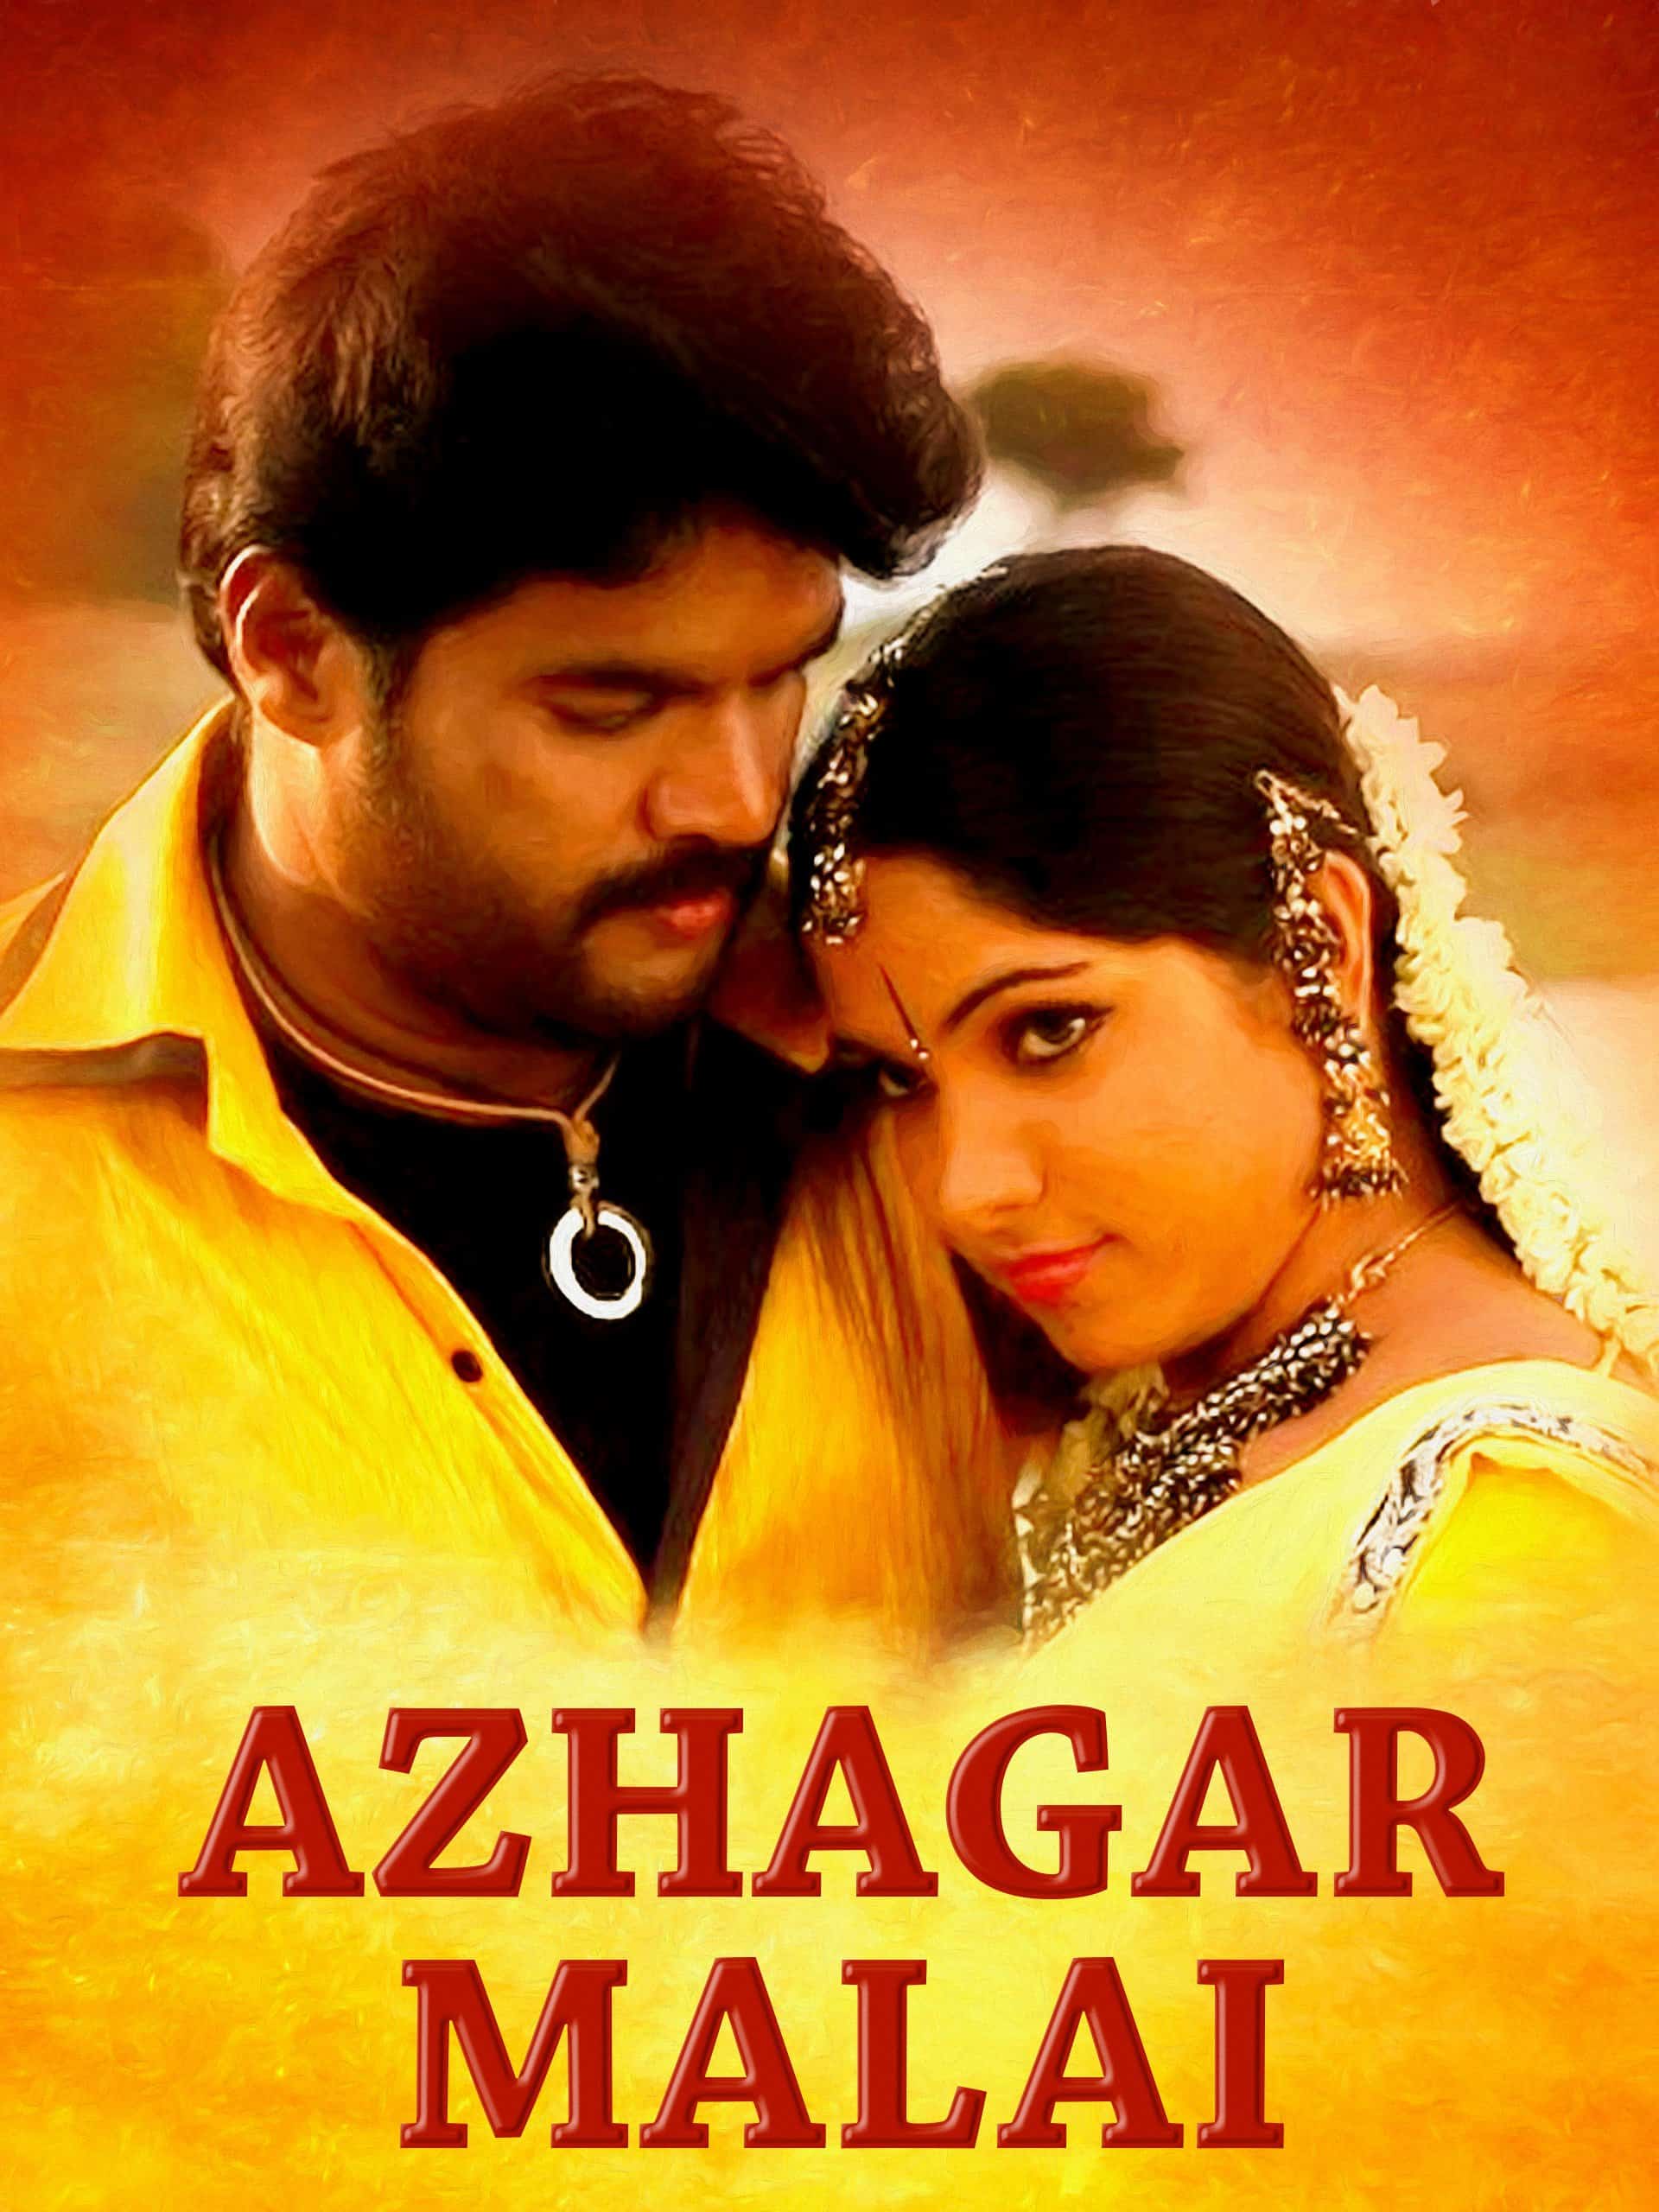 Azhagar Malai 2009 Tamil Action Movie Online